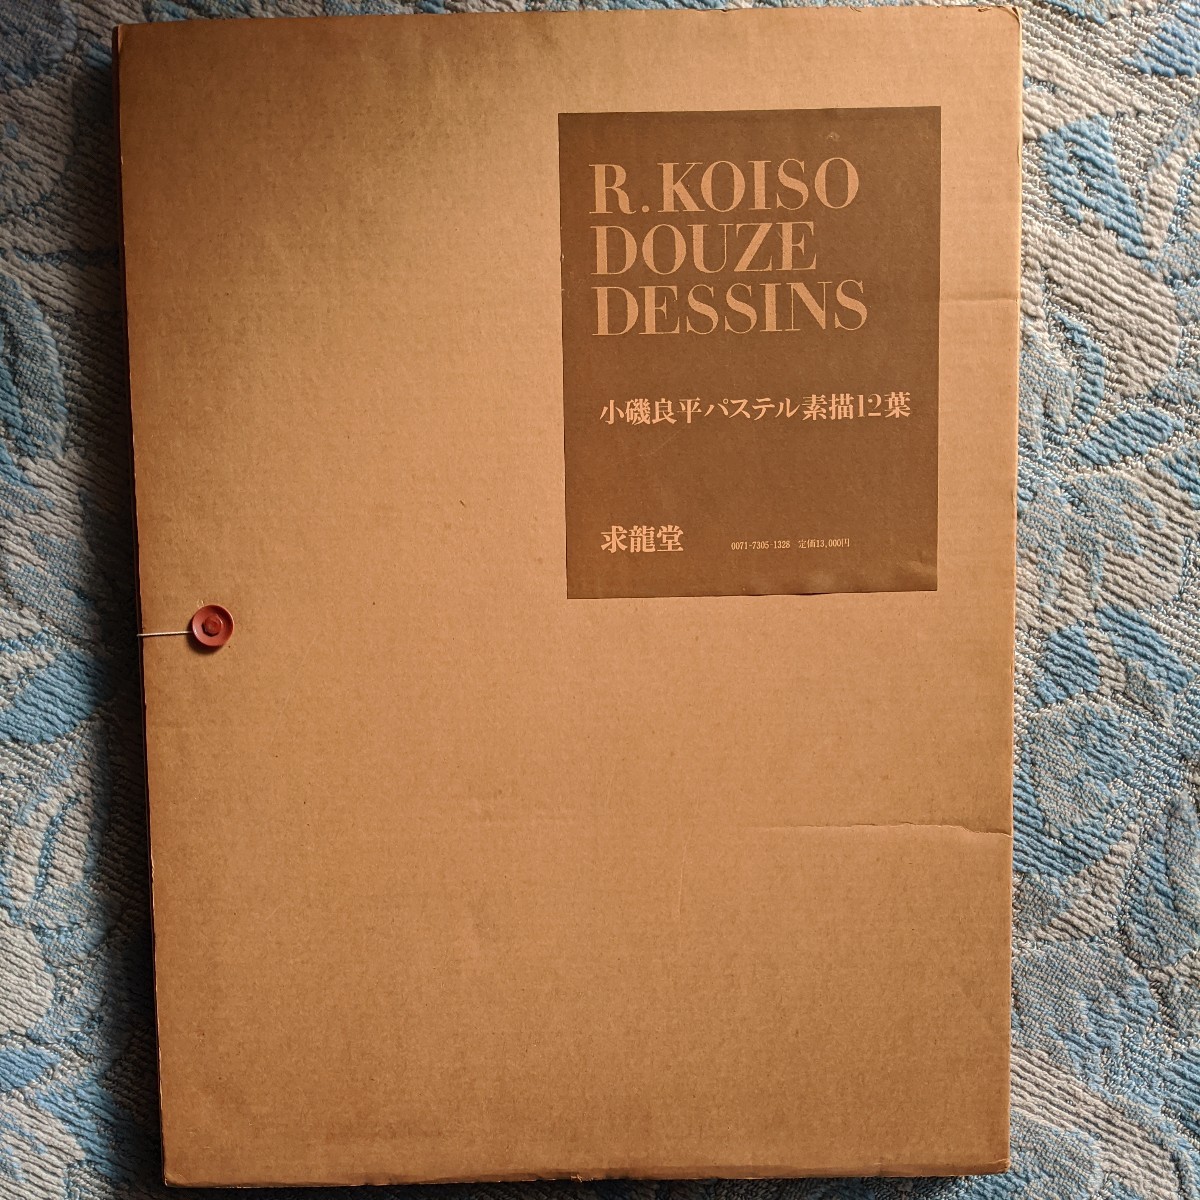 코이소 료헤이(Ryohei Koiso)의 파스텔 그림 12점, 그림, 그림책, 수집, 목록